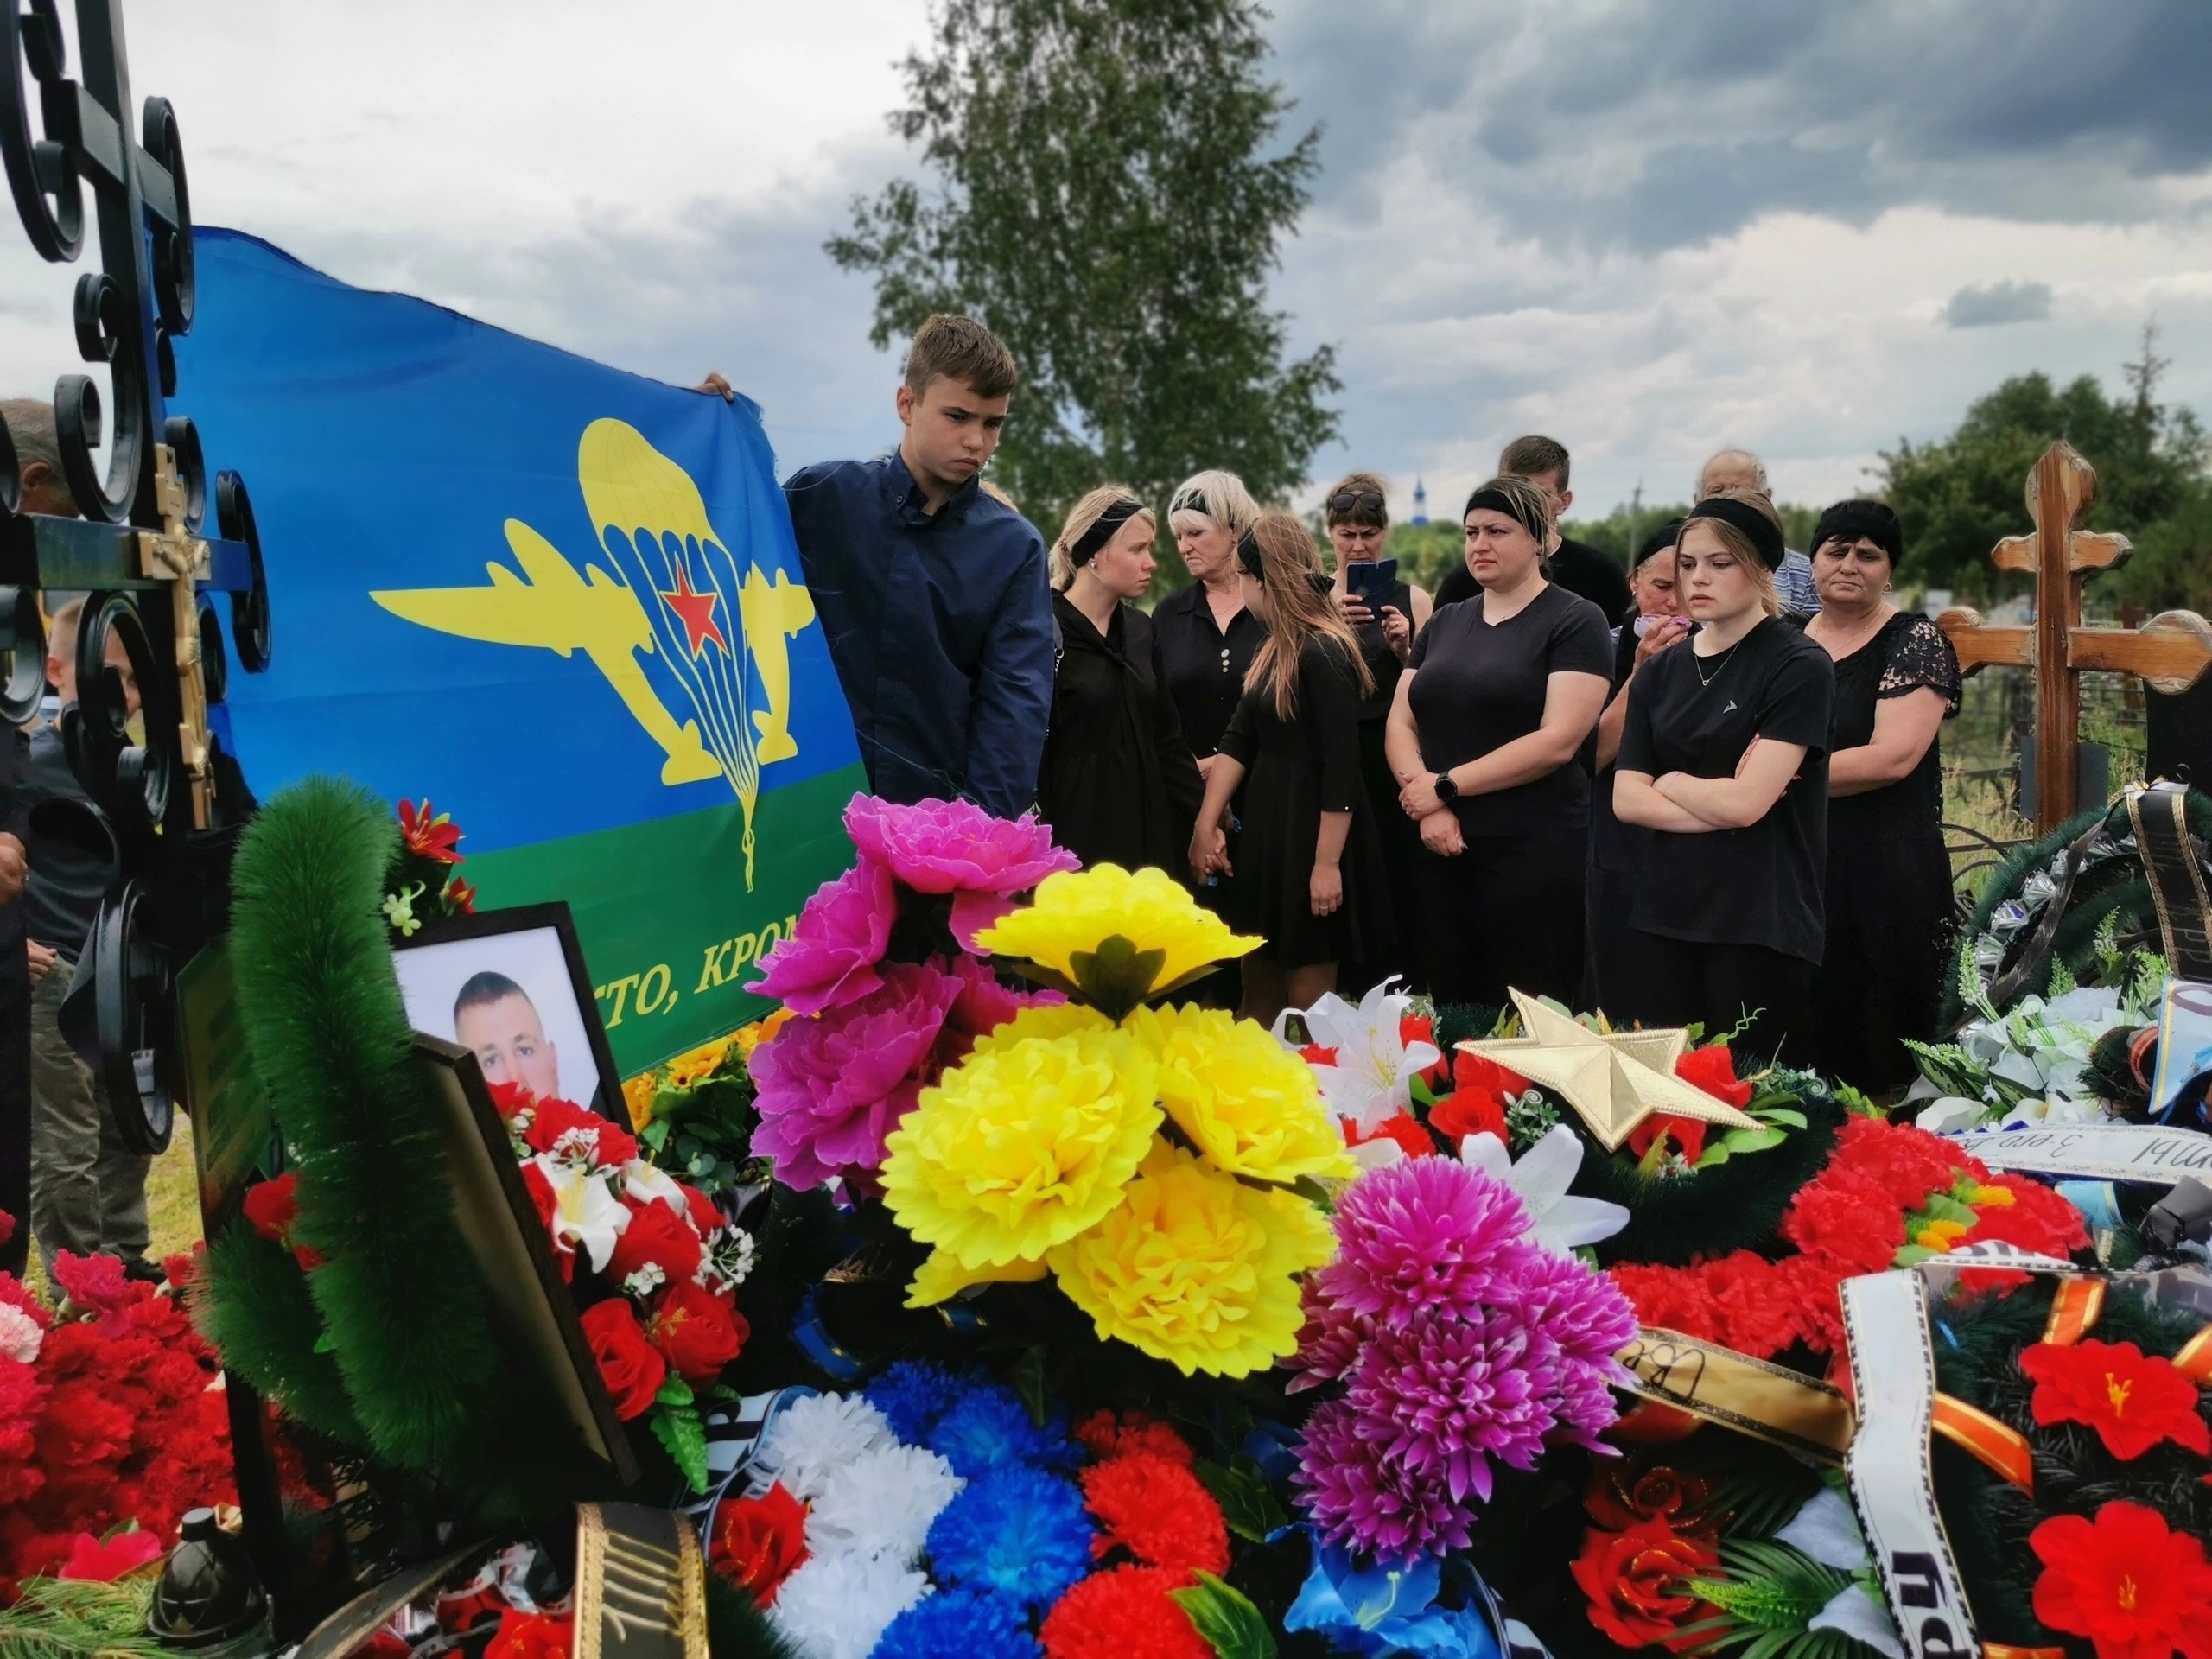 разбитому доту приходят ребята приносят цветы на могилу солдата фото 38